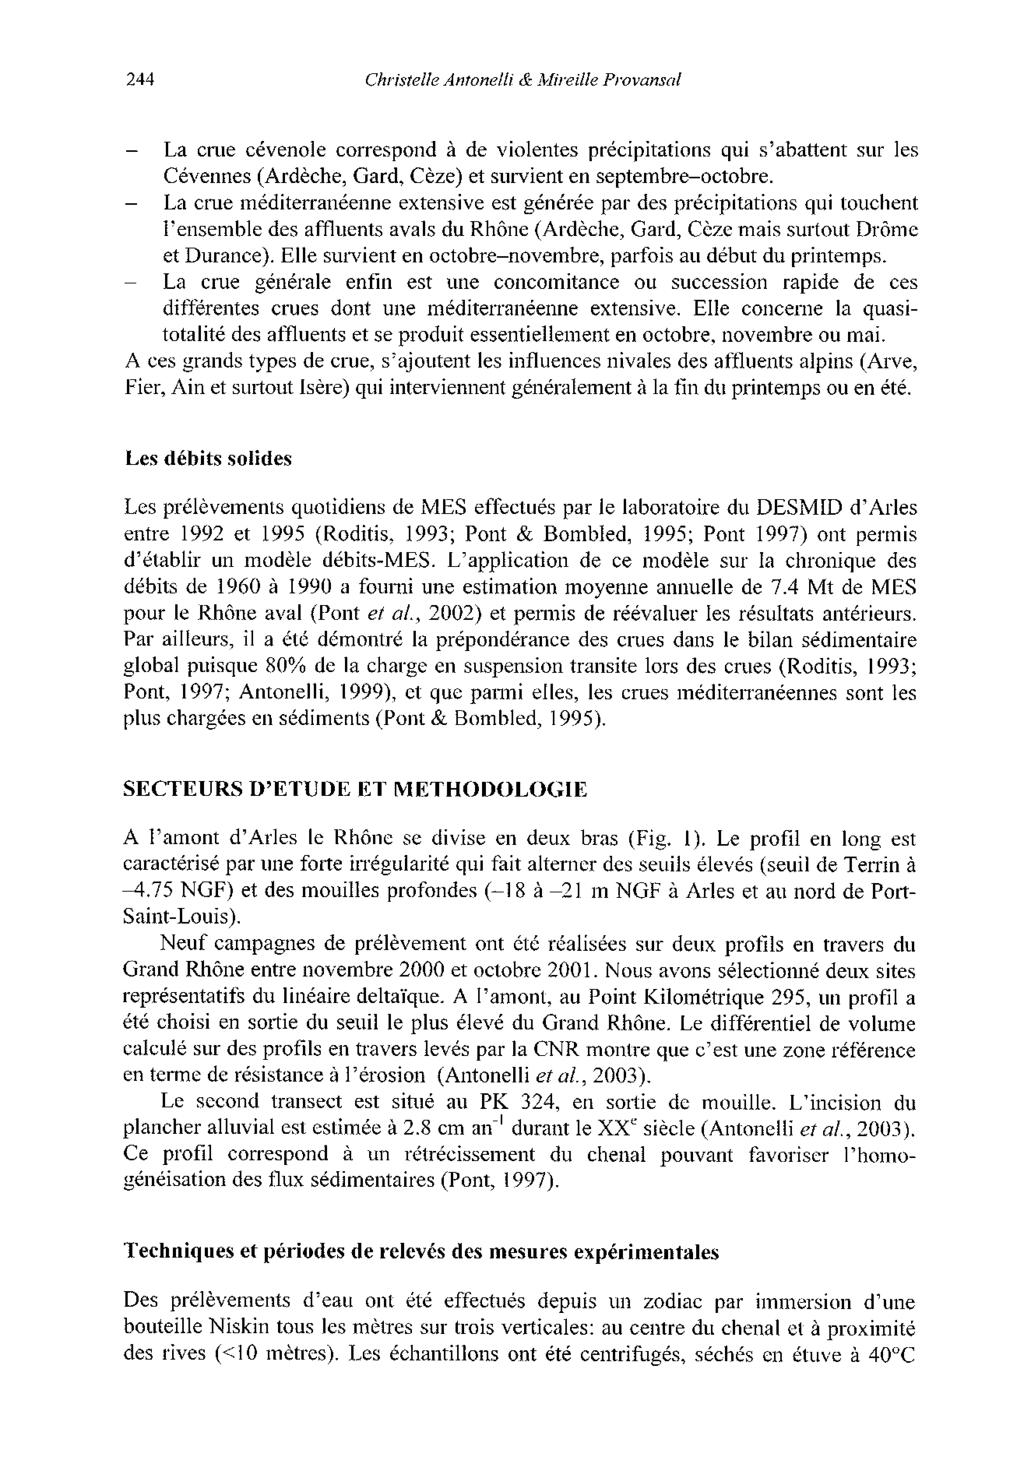 244 Christelle Antonelli & Mireille Provansal - La crue cévenole correspond à de violentes précipitations qui s'abattent sur les Cévennes (Ardèche, Gard, Cèze) et survient en septembre-octobre.